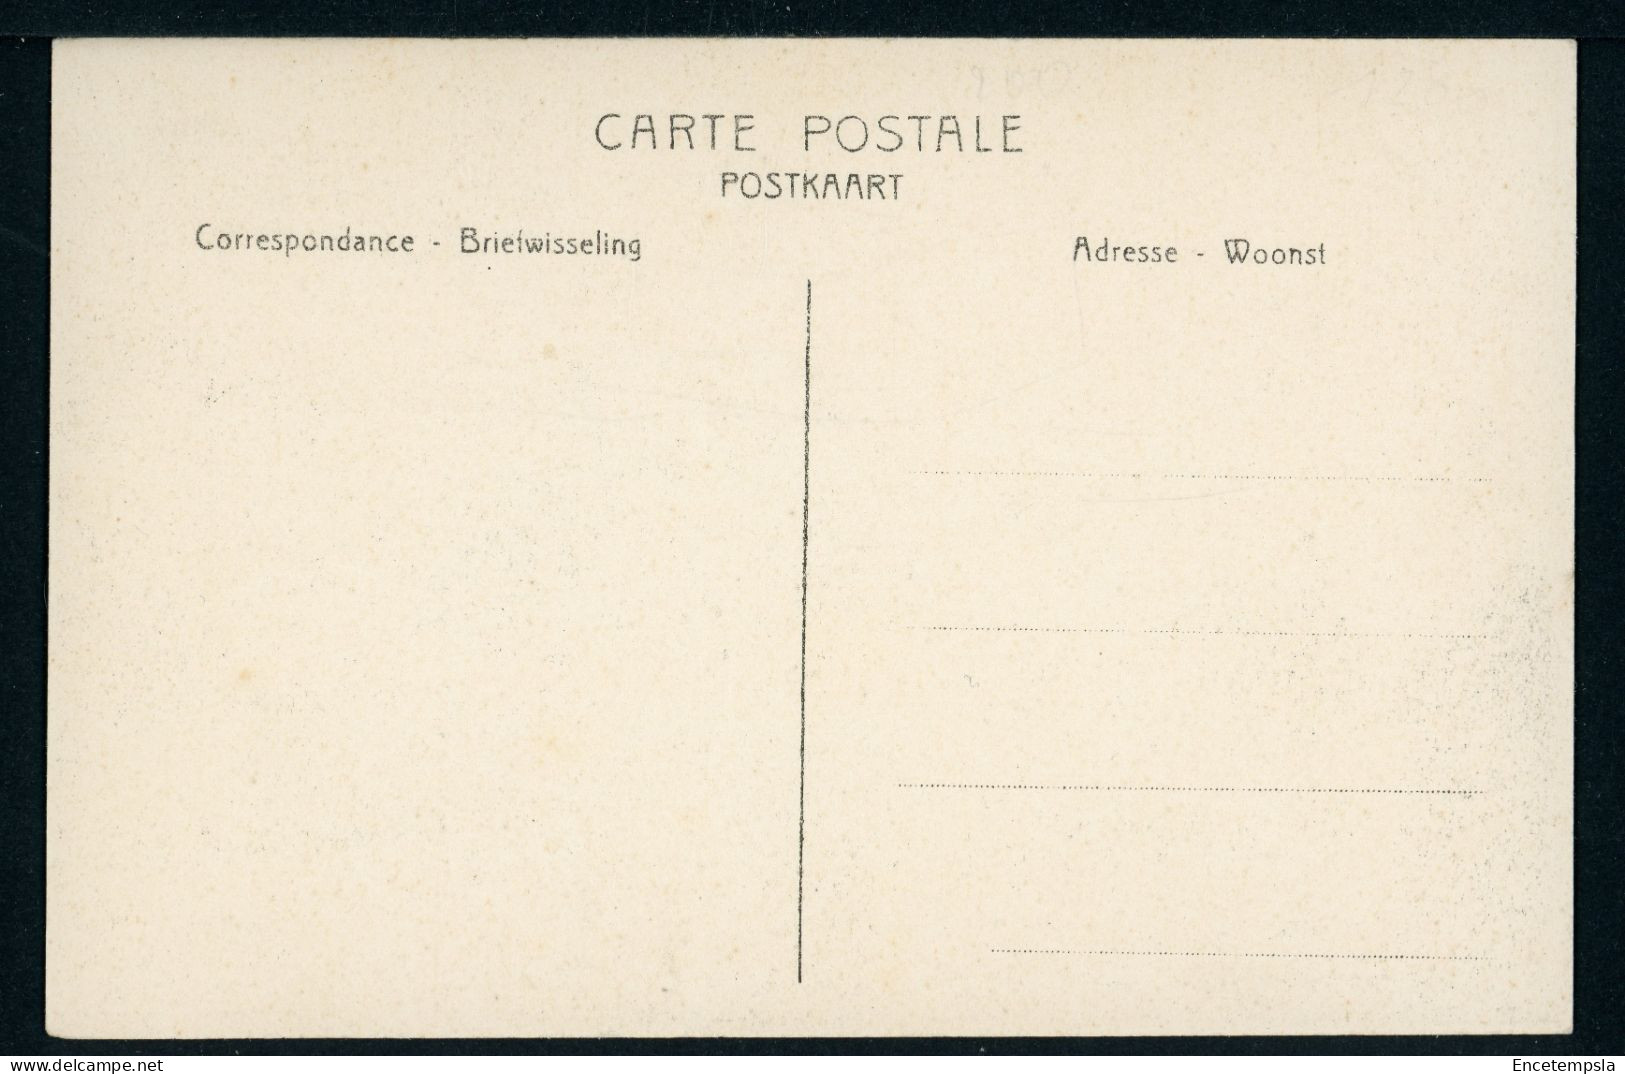 CPA - Carte Postale - Exposition Provinciale Du Limbourg à St Trond - Souvenir De L'Entrée Des Mines (CP23967) - Sint-Truiden